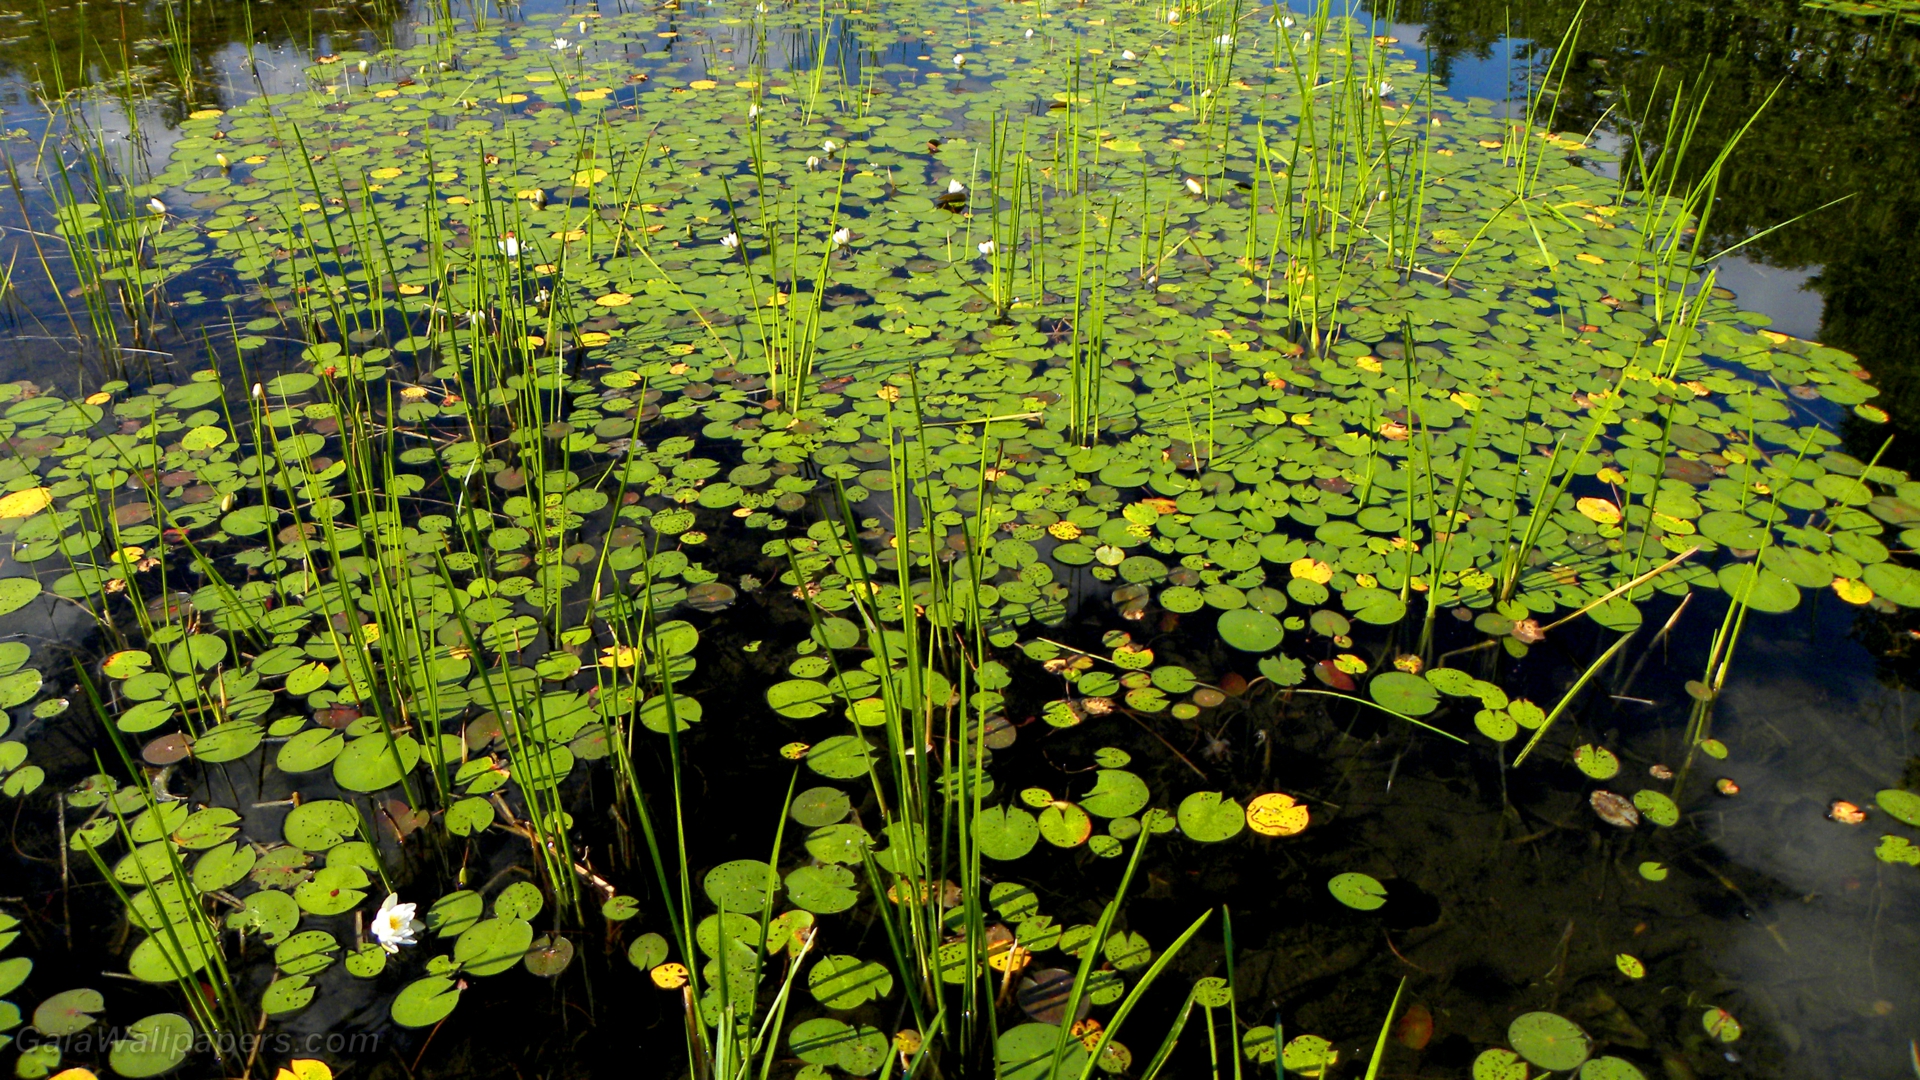 Marsh full of water lilies - Free desktop wallpapers